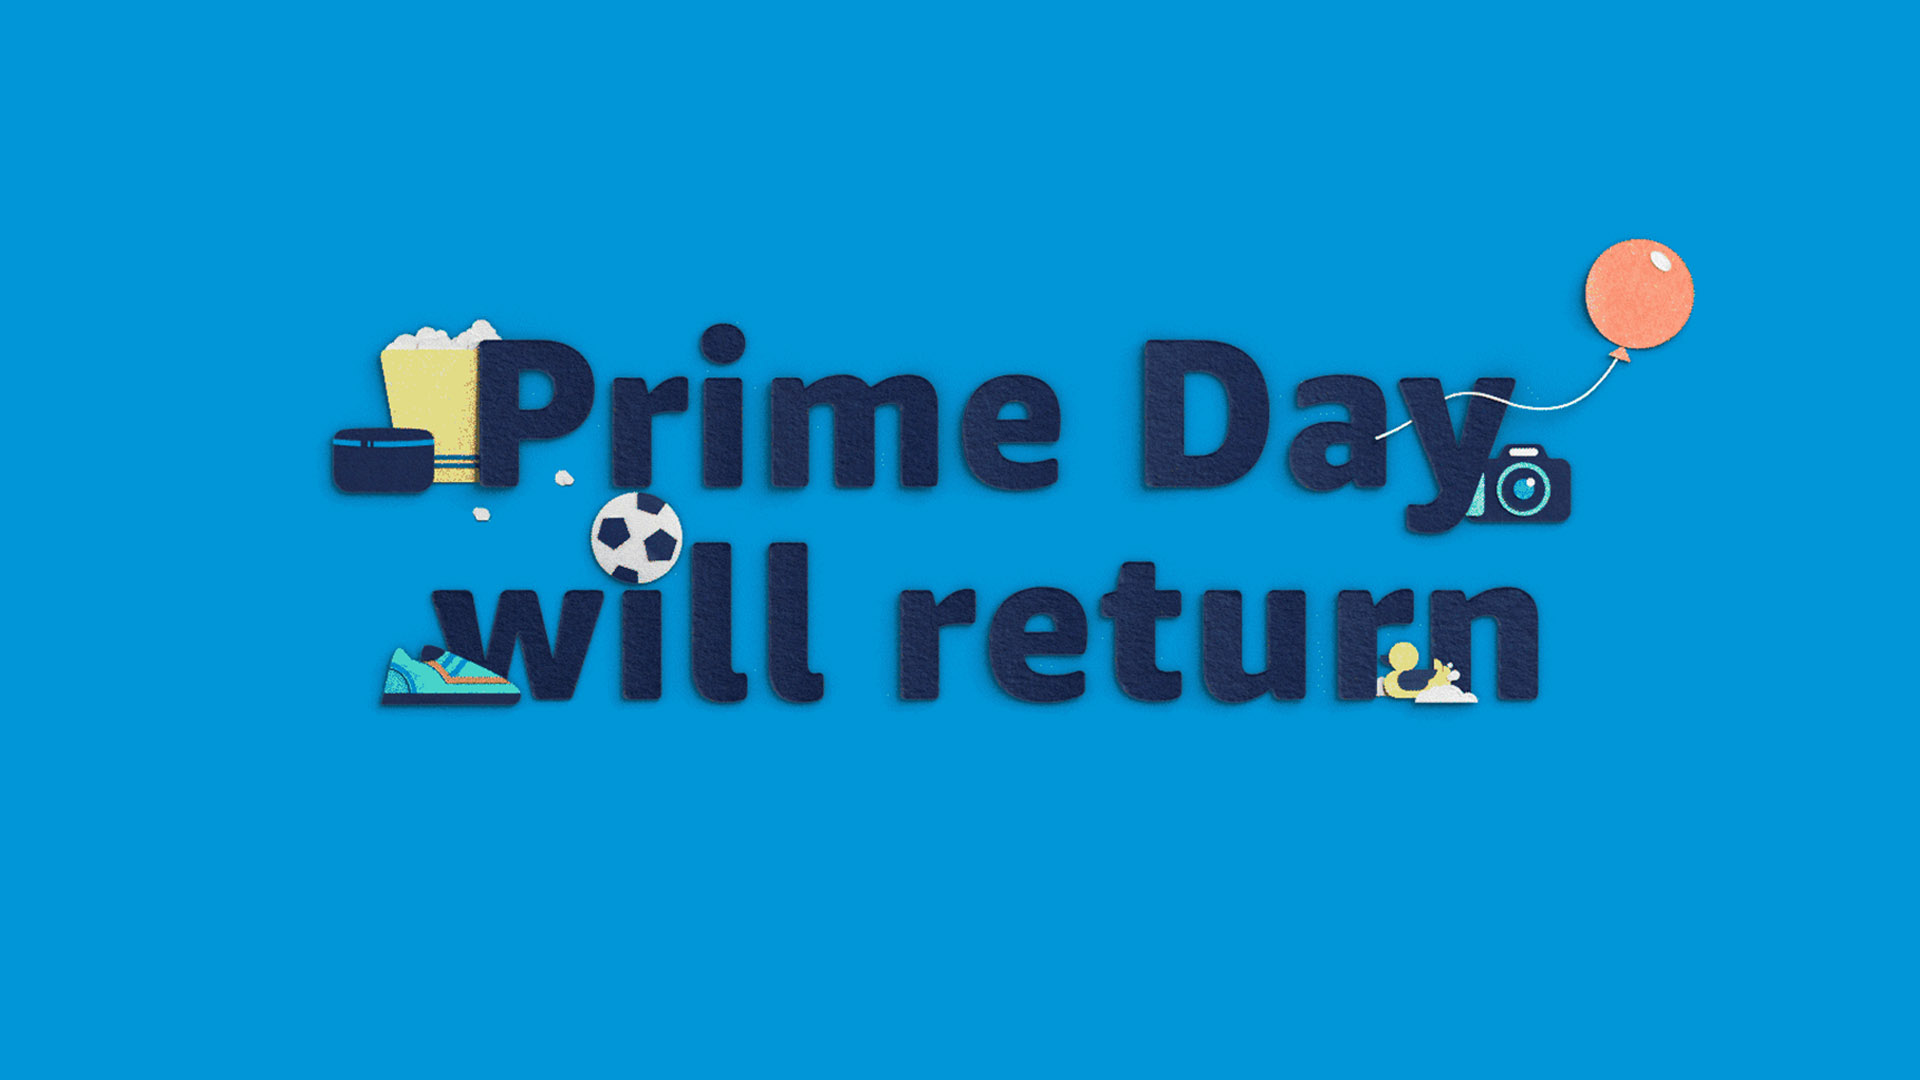 ຂໍ້ສະເໜີທີ່ດີທີ່ສຸດຂອງ Amazon Prime Day ກ່ອນວັນທີ 21 ມິຖຸນາ